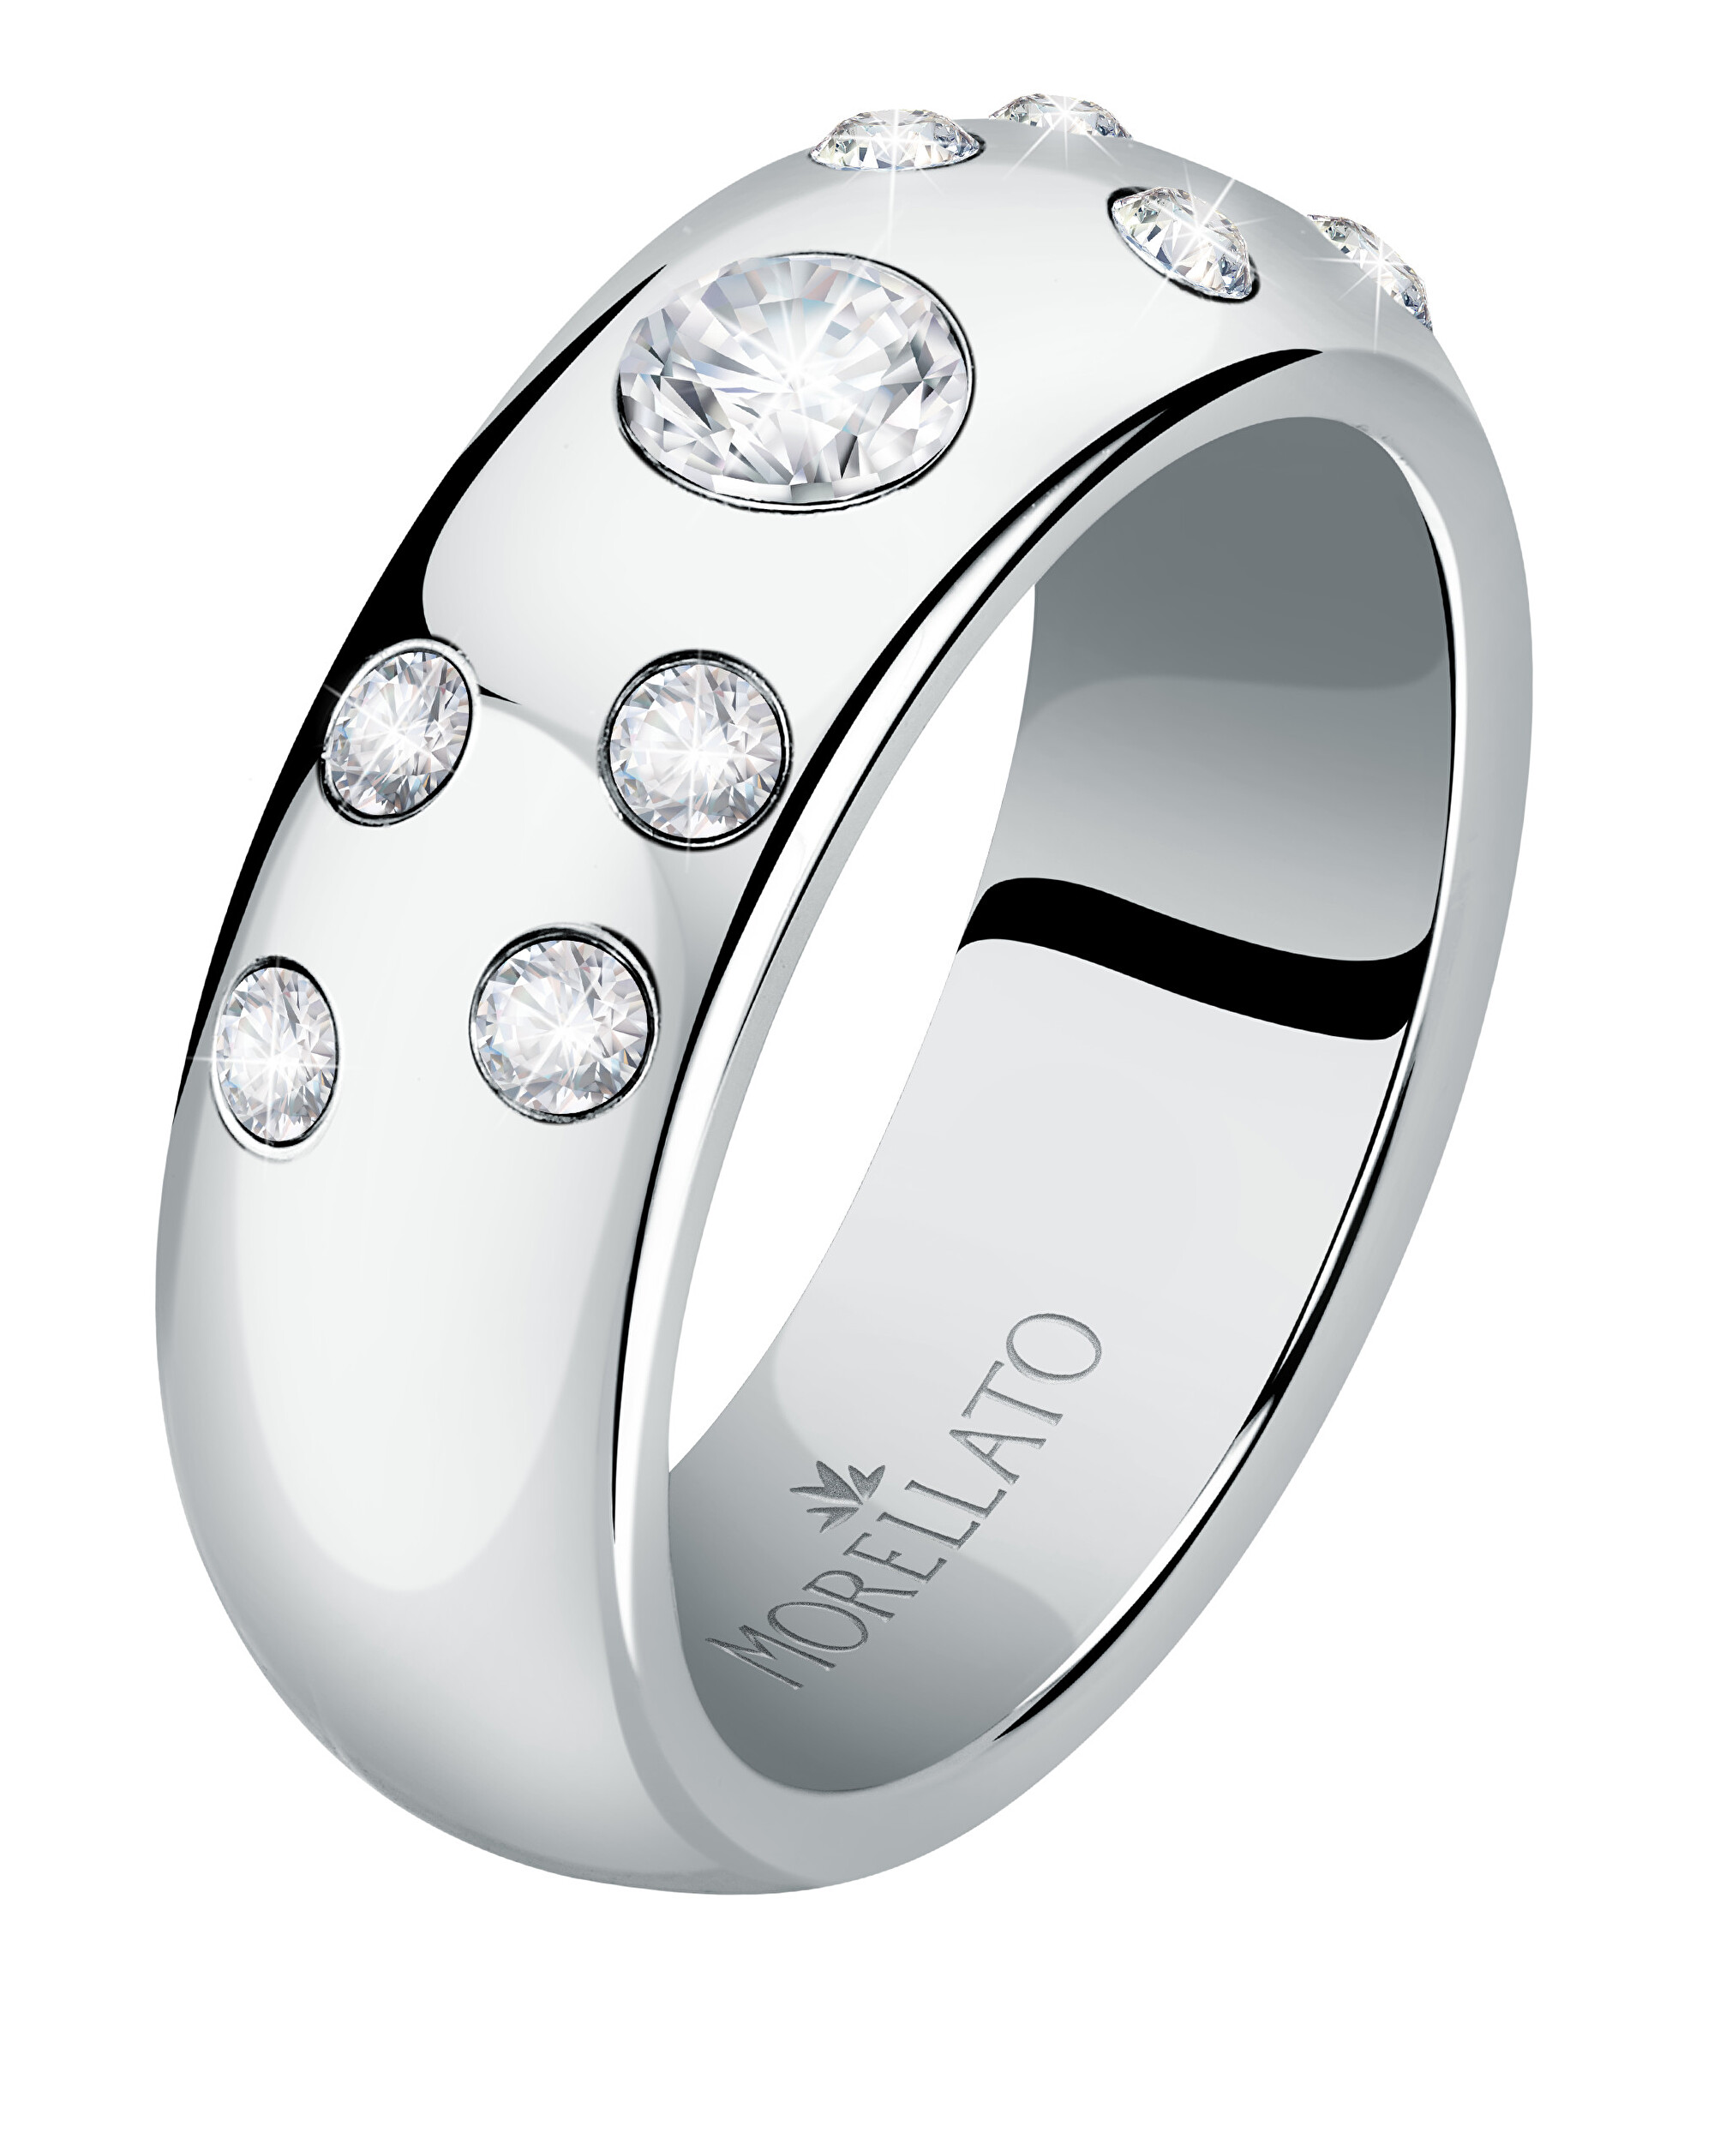 Morellato Luxusný oceľový prsteň s kryštálmi Poetica SAUZ260 56 mm